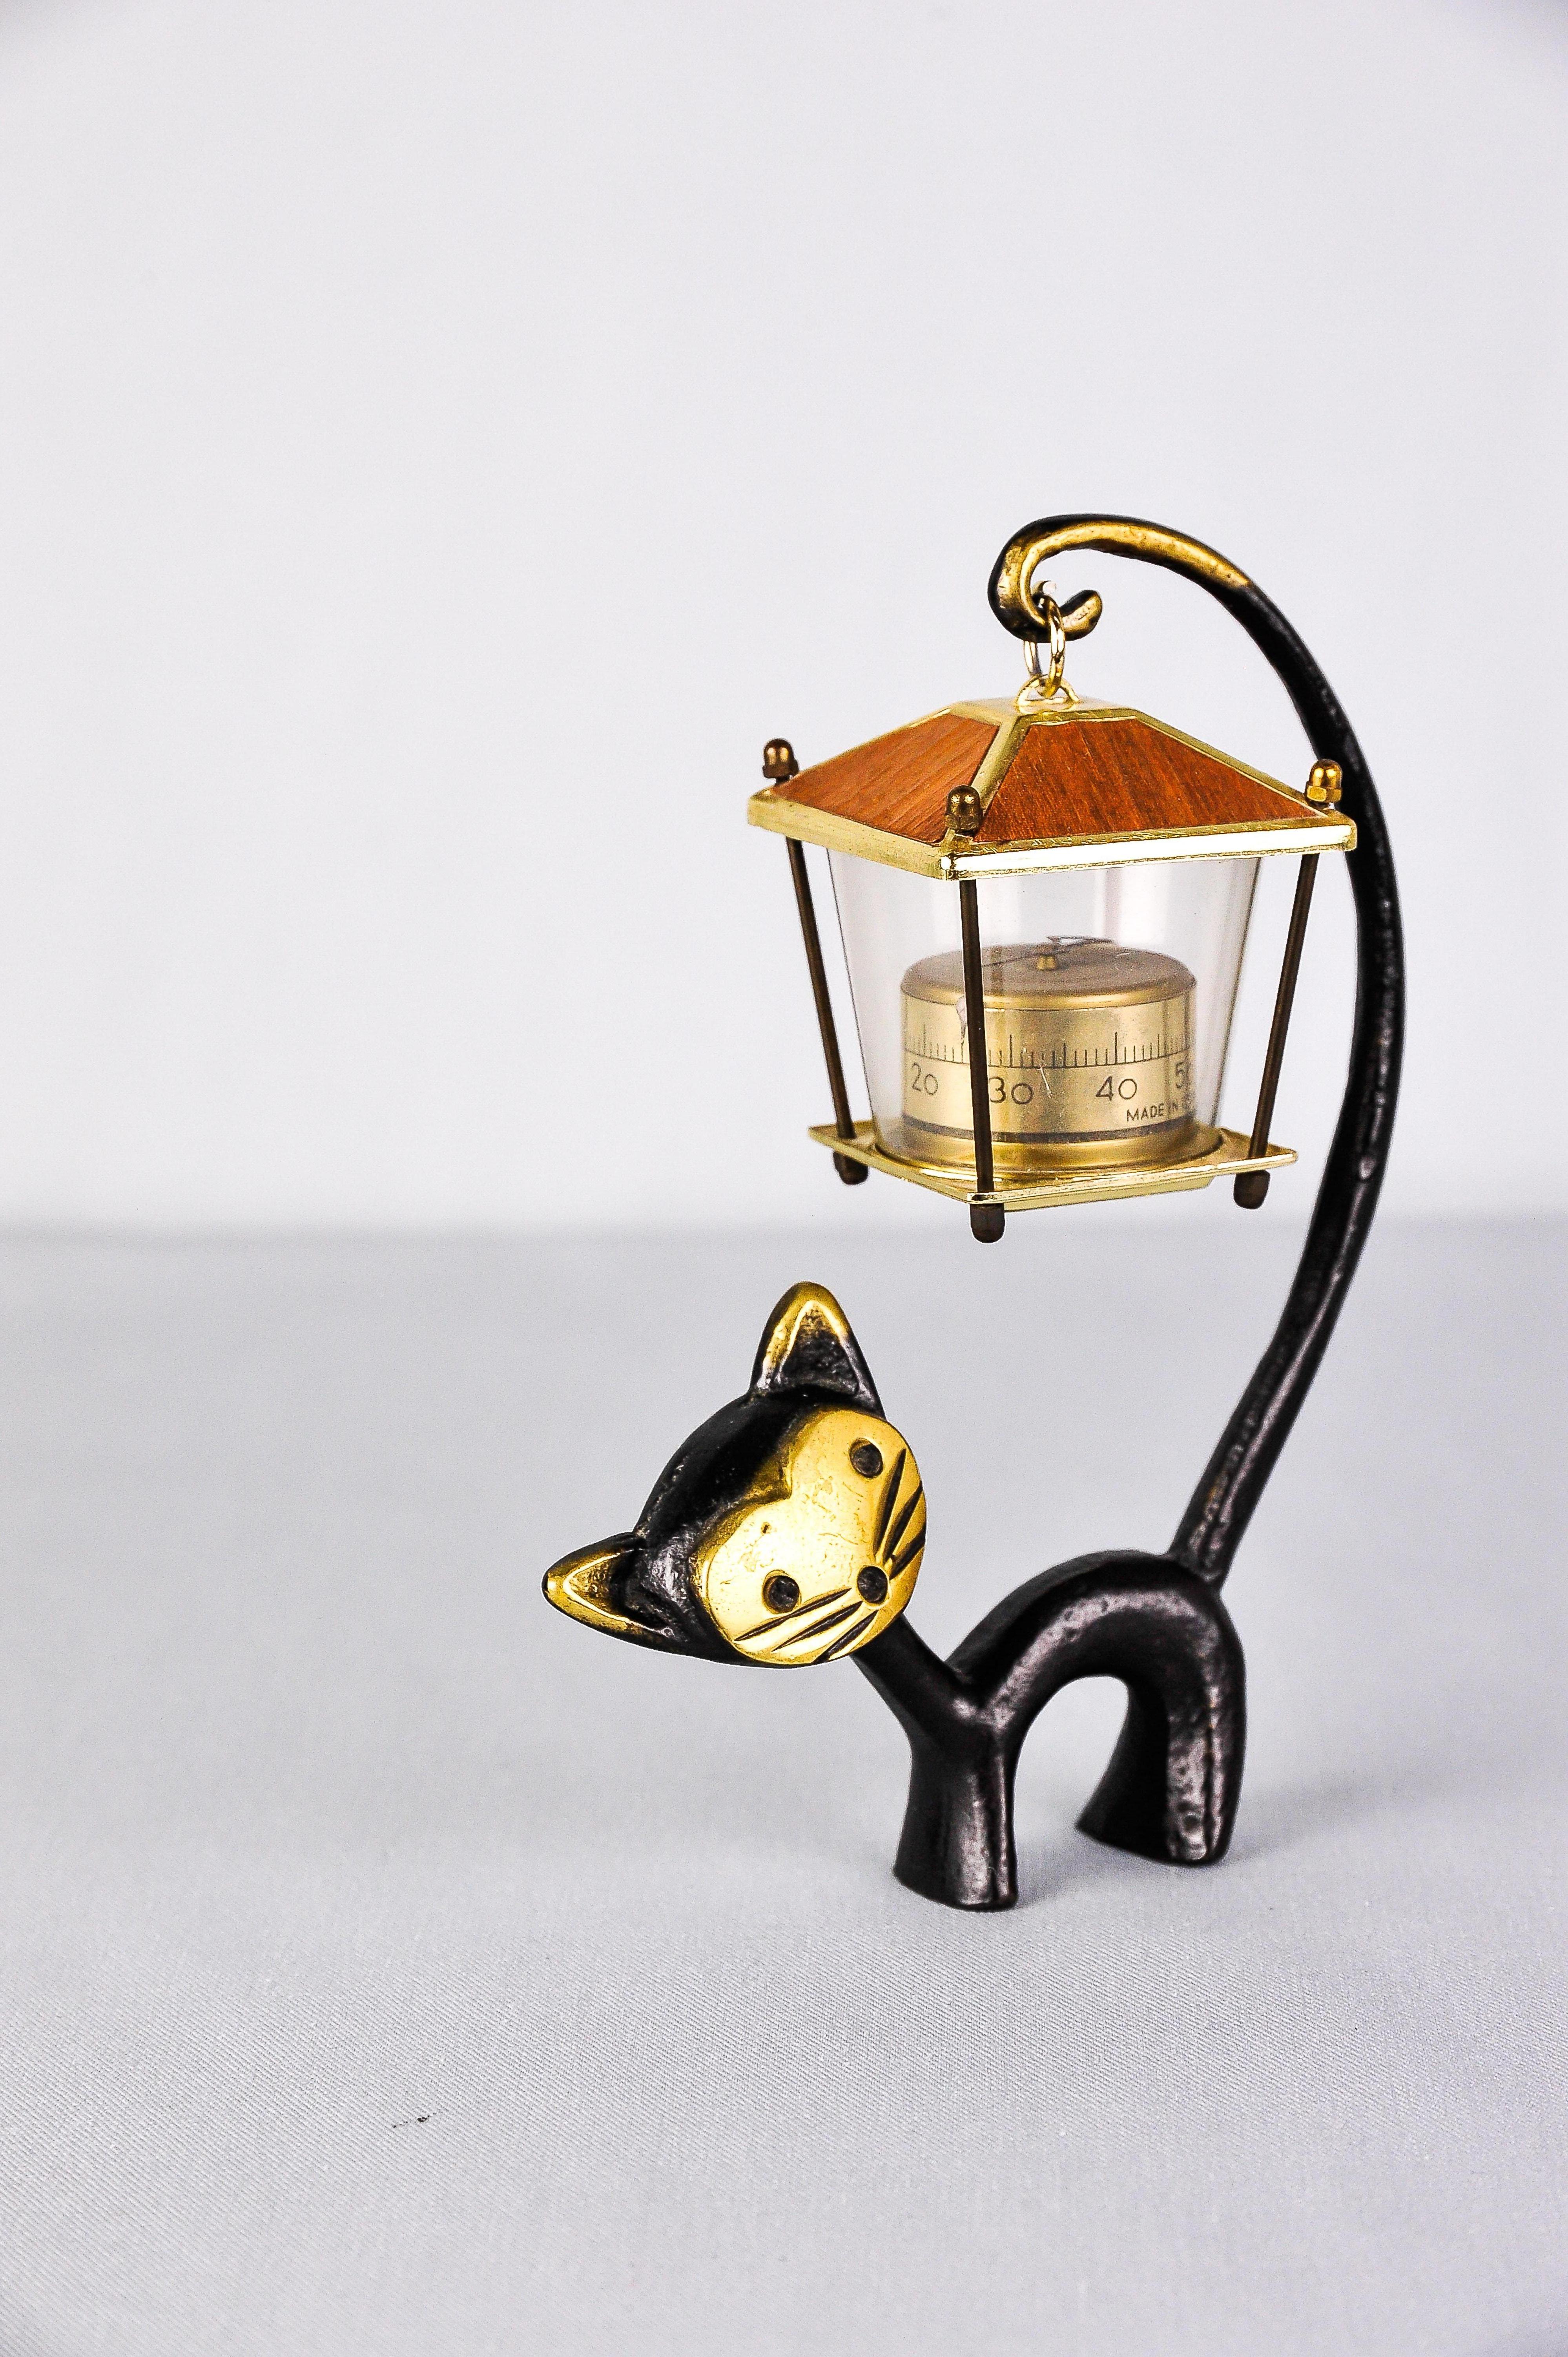 Un très charmant thermomètre de bureau autrichien, composé d'une jolie figurine de chat et d'un thermomètre en forme de lanterne. Un dessin très humoristique de Walter Bosse, exécuté par Hertha Baller Austria dans les années 1950. En laiton, en bon